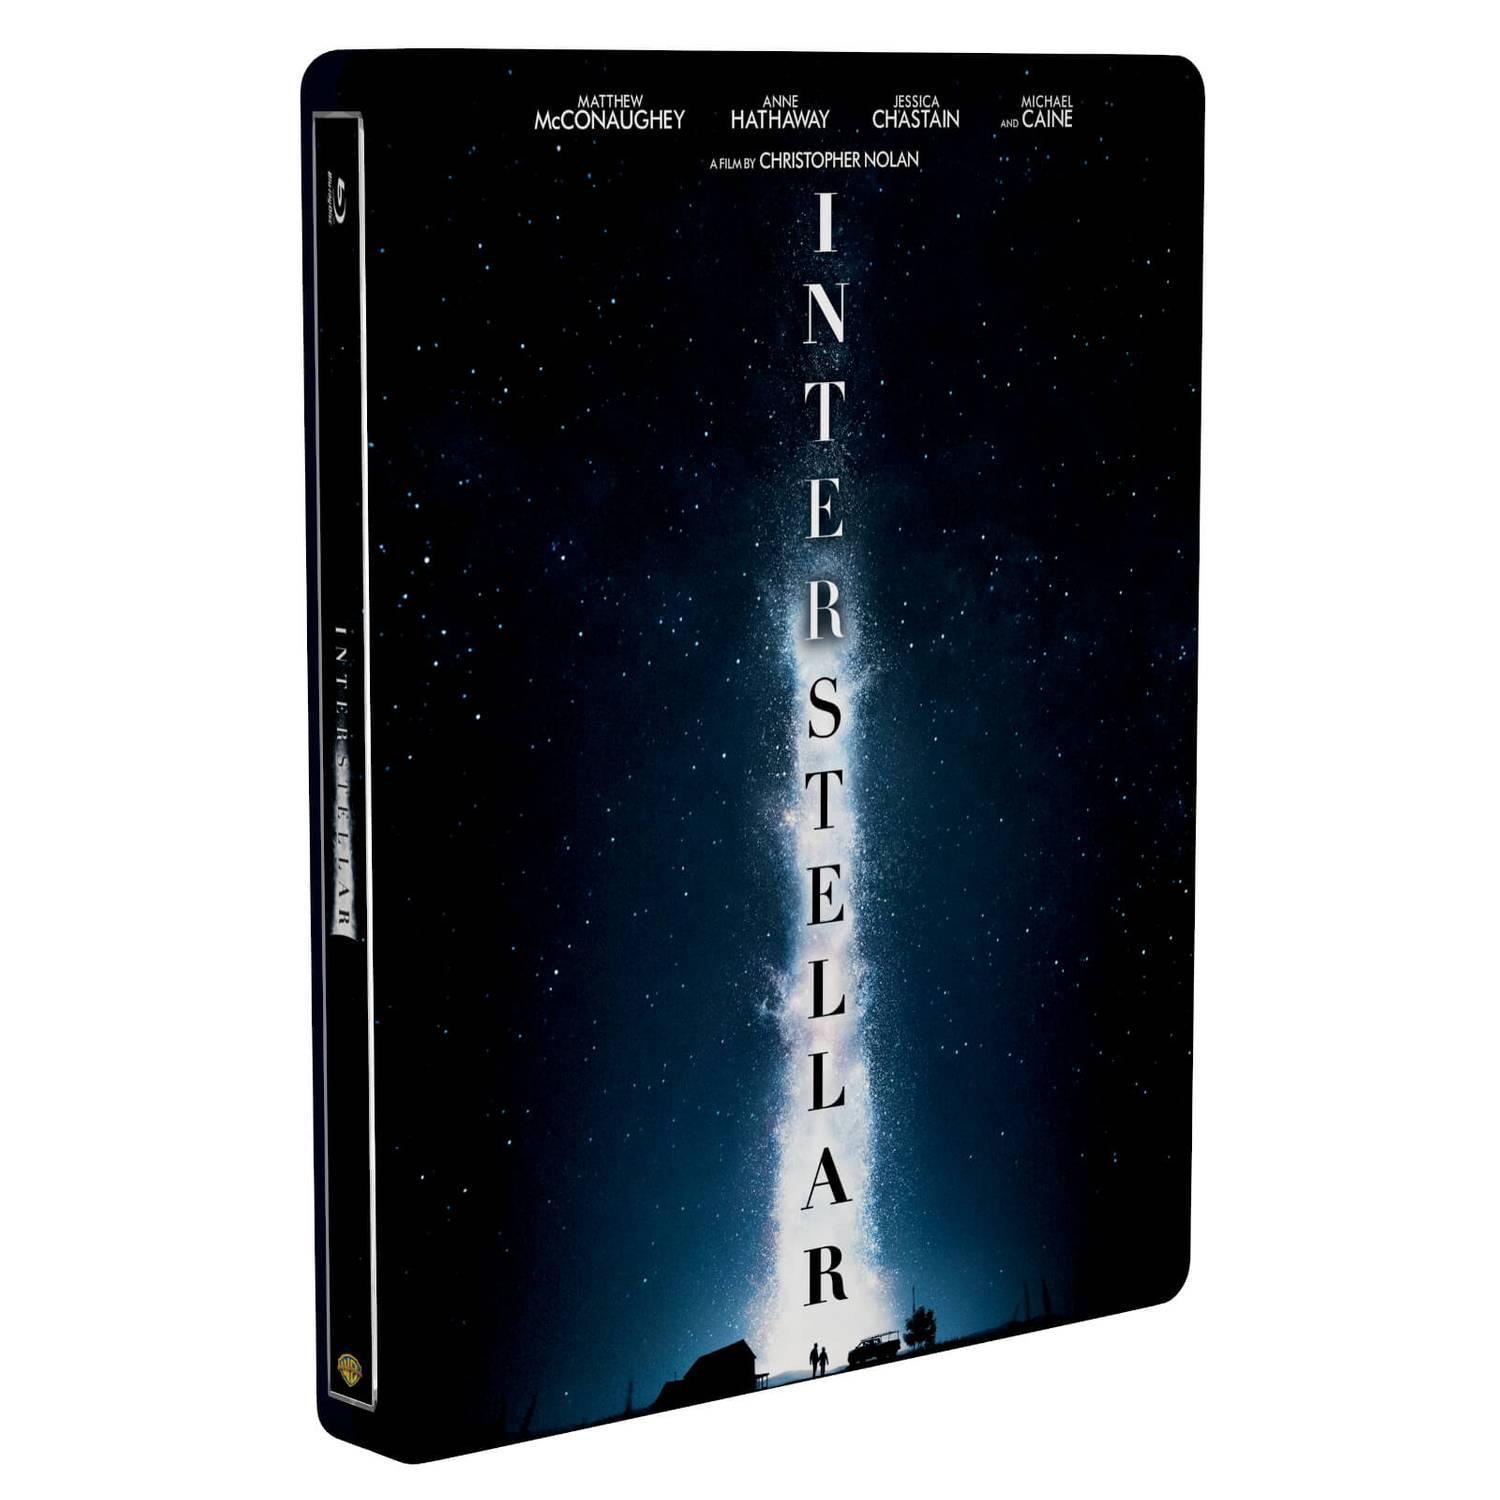 Интерстеллар (2 Blu-ray) Steelbook